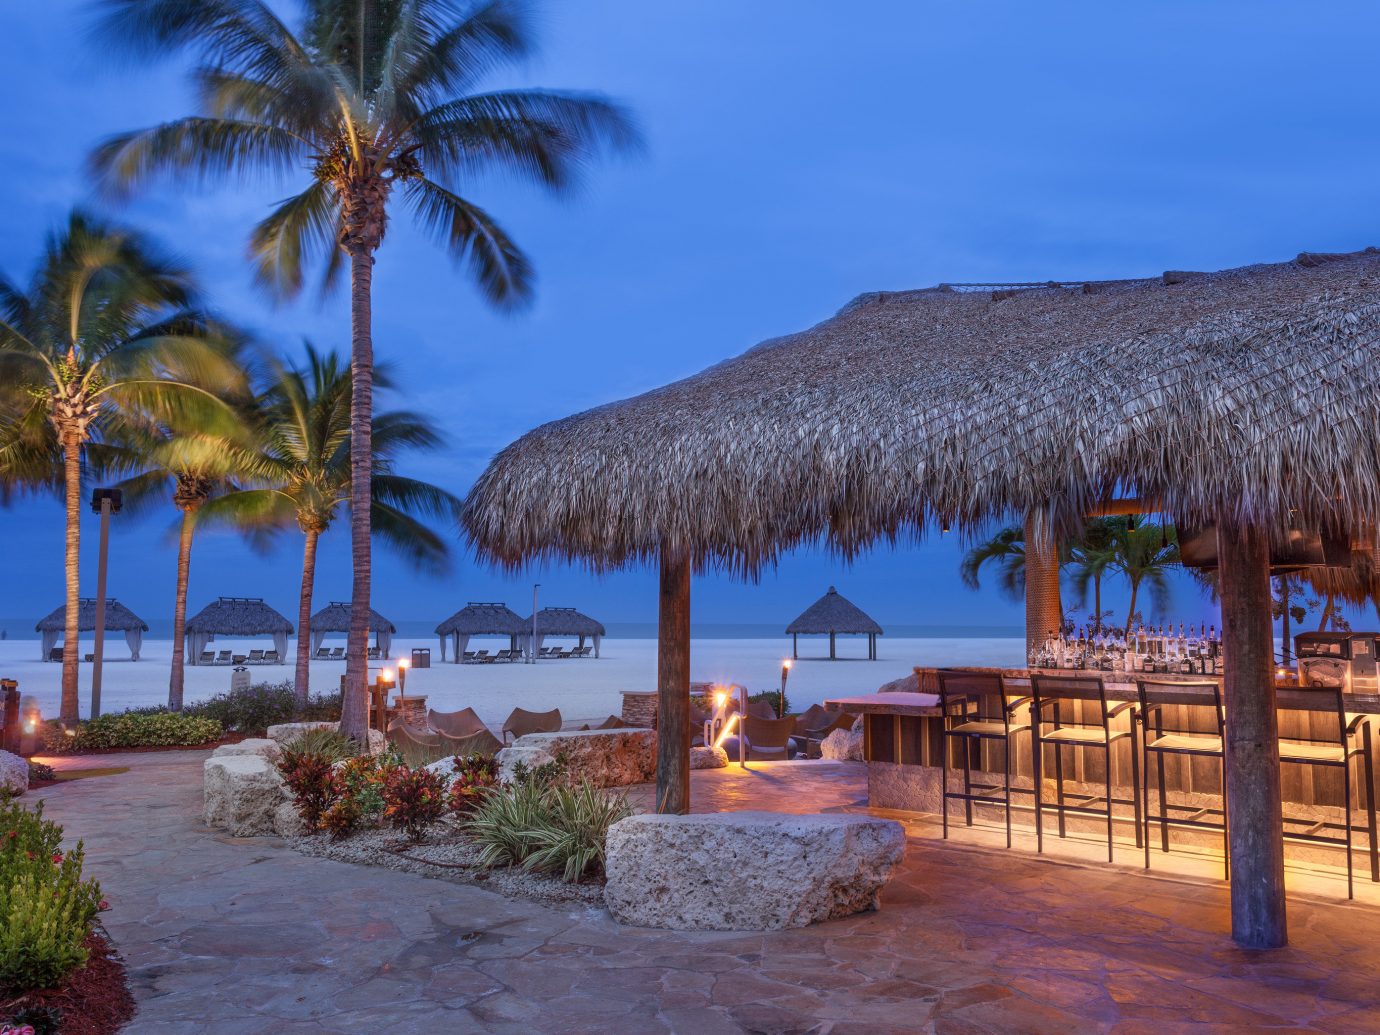 10 Best Beach Resorts in Florida